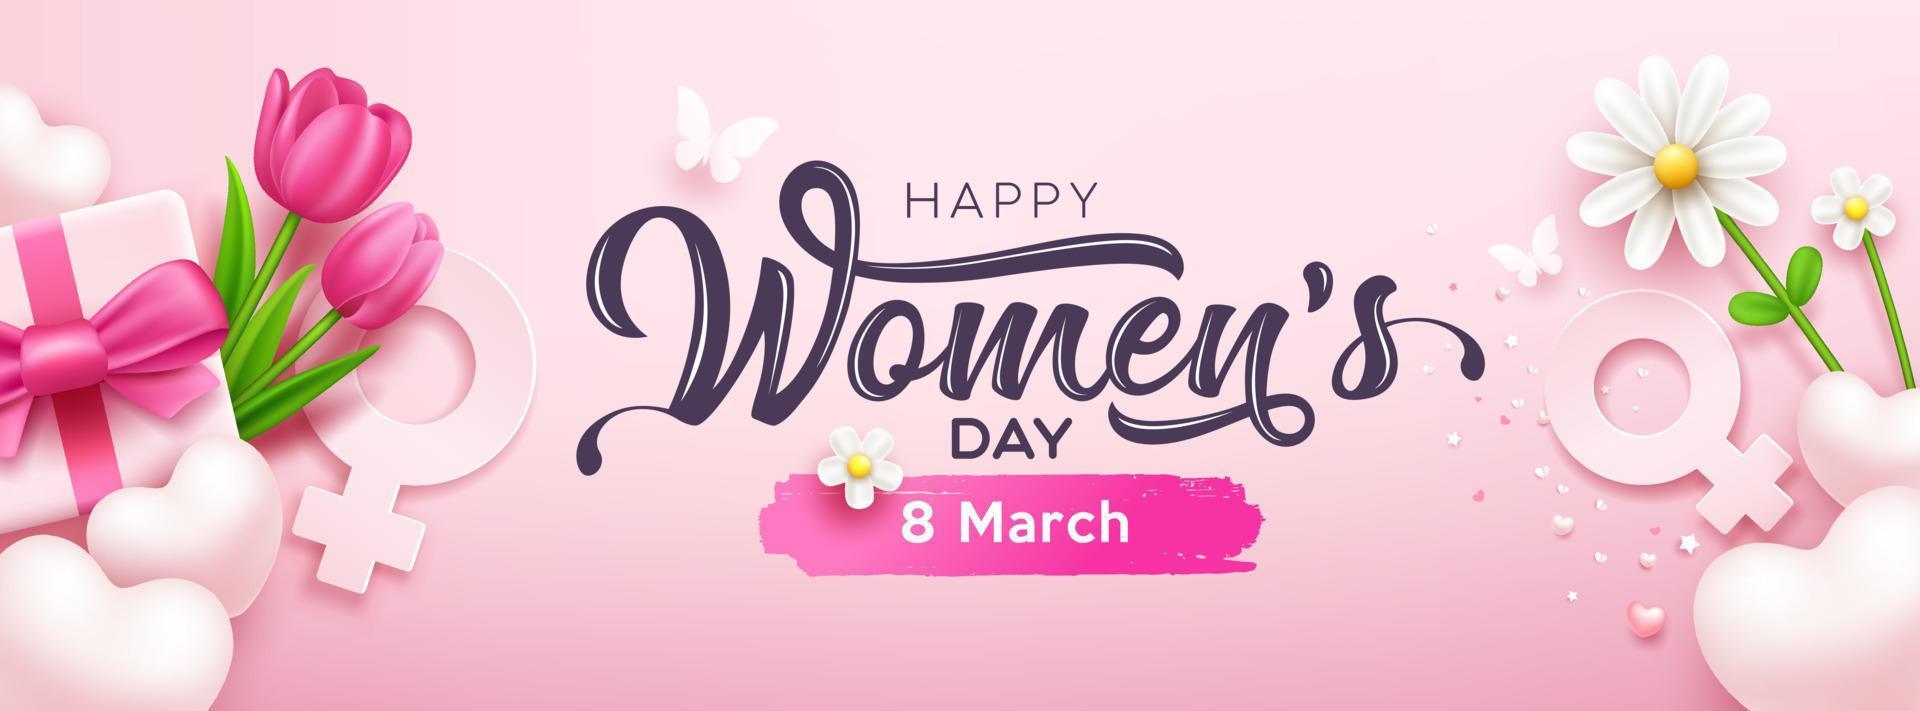 Lycklig kvinnor dag banderoller gåva låda rosa bågar band med tulpan blommor och fjäril, hjärta, vit blomma, begrepp design på rosa bakgrund, eps10 vektor illustration.